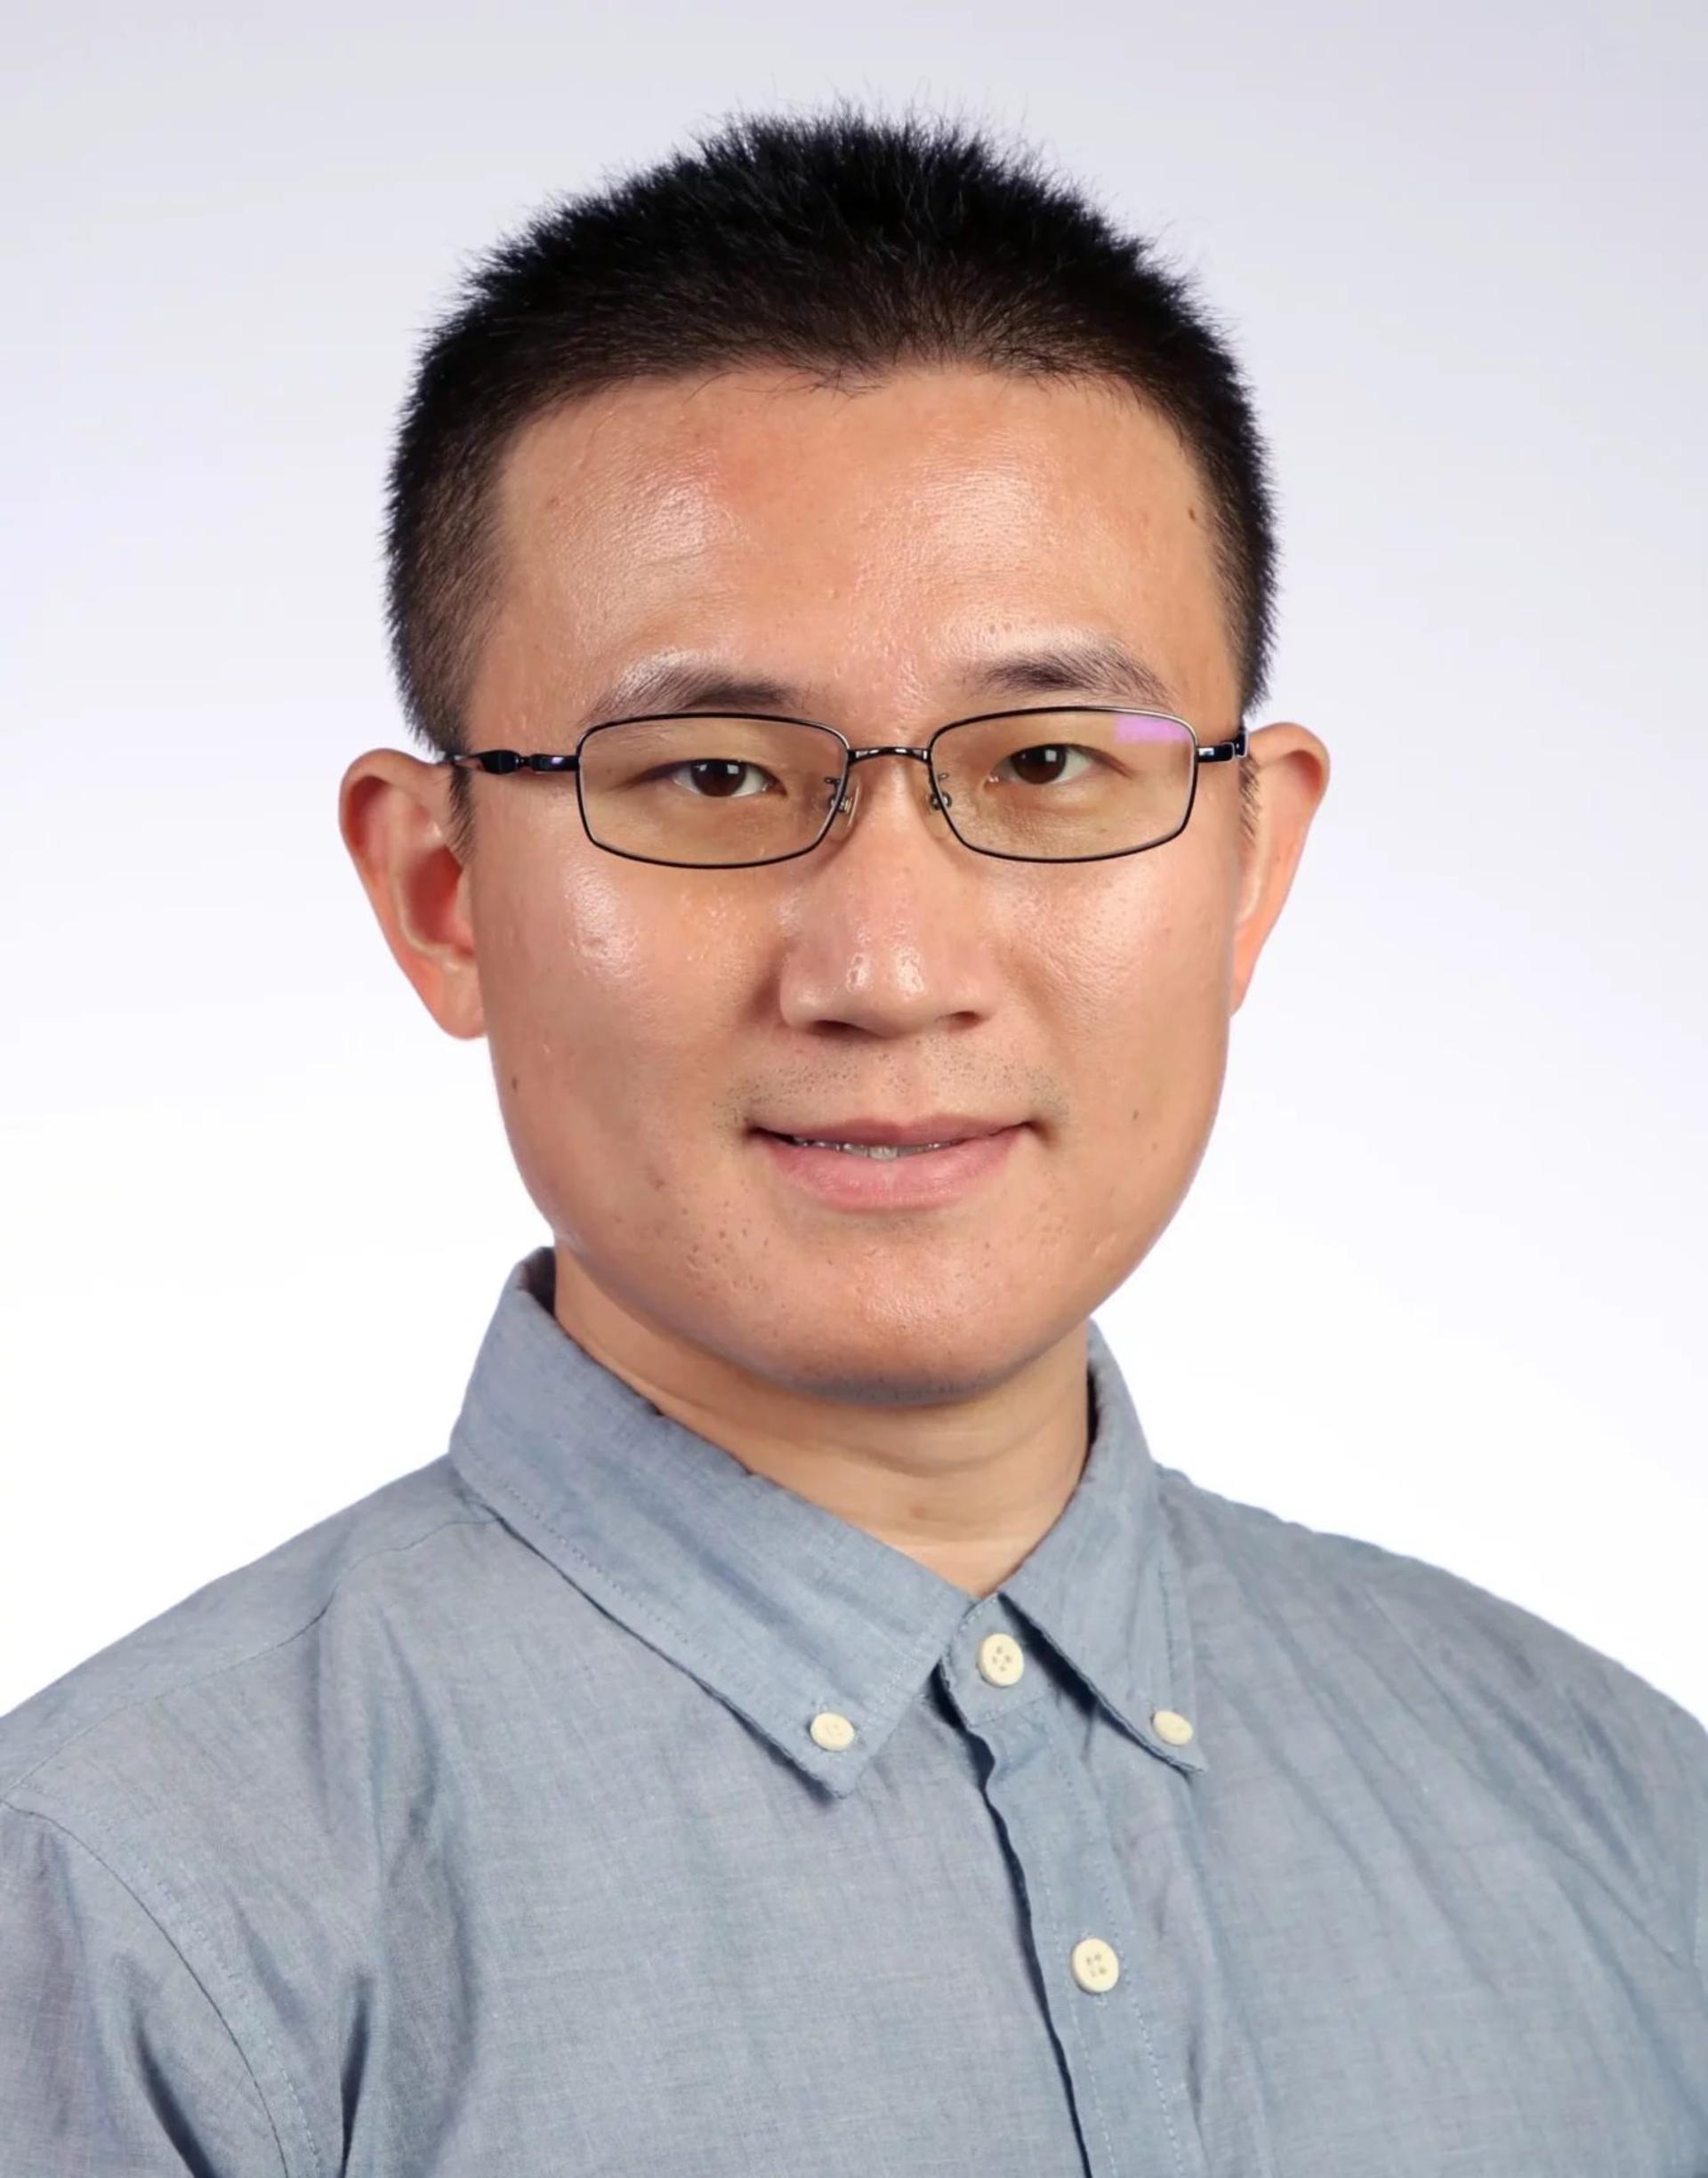 شین وانگ اخترشناس آکادمی علوم چین